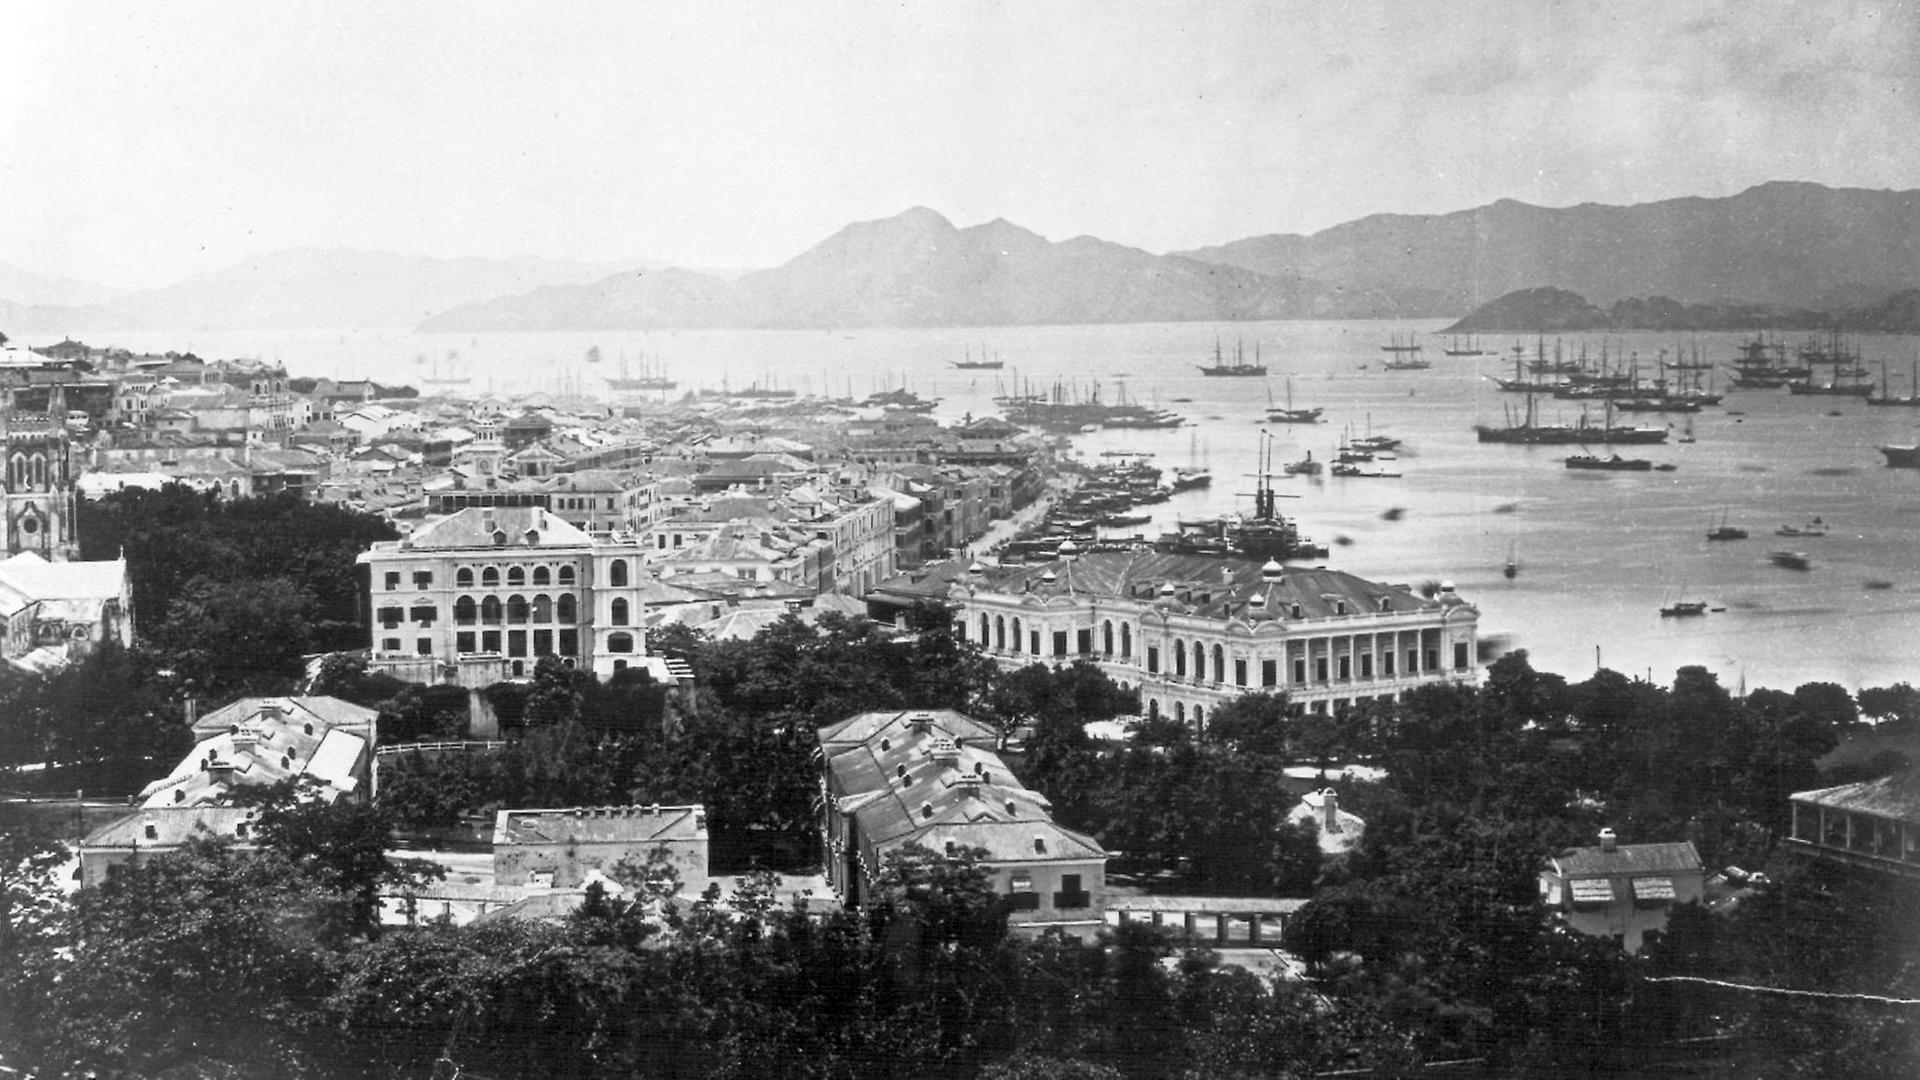 Hongkong im Jahr 1870. Der sogenannte Opiumkrieg zwischen England und China hatte 1841 zur Besetzung Hongkongs geführt. Nach 156 Jahren wurde die britische Kronkolonie zum 1. Juli 1997 an China zurückgegeben.